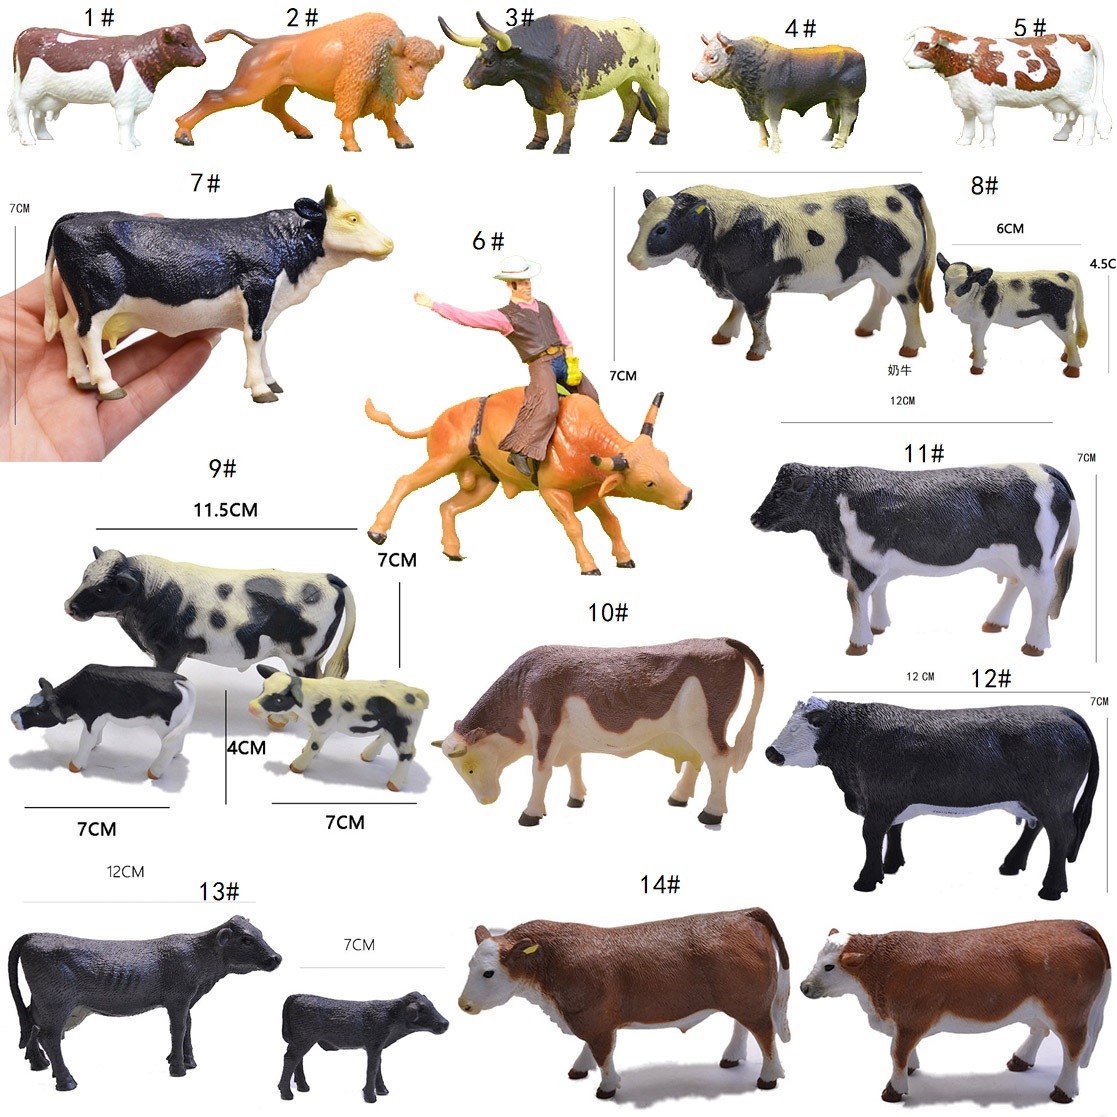 共119 件黄牛模型相关商品